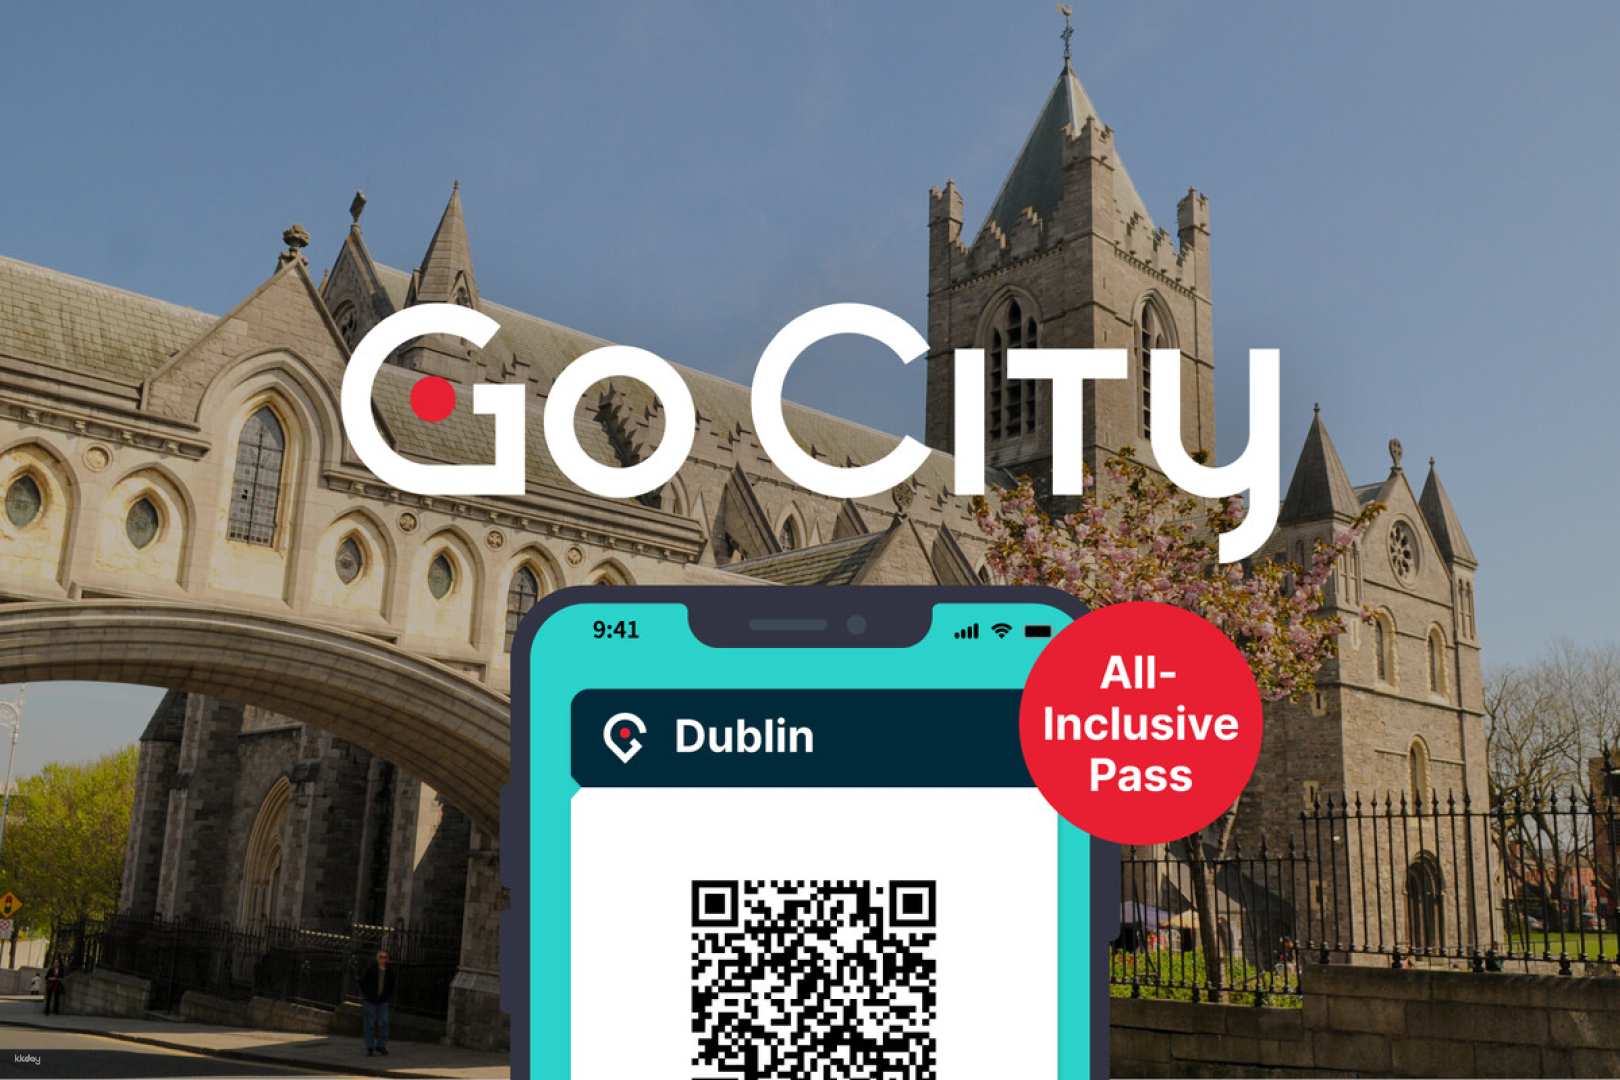 愛爾蘭-都柏林全天暢遊通行證 Dublin All-Inclusive Pass| 自選天數